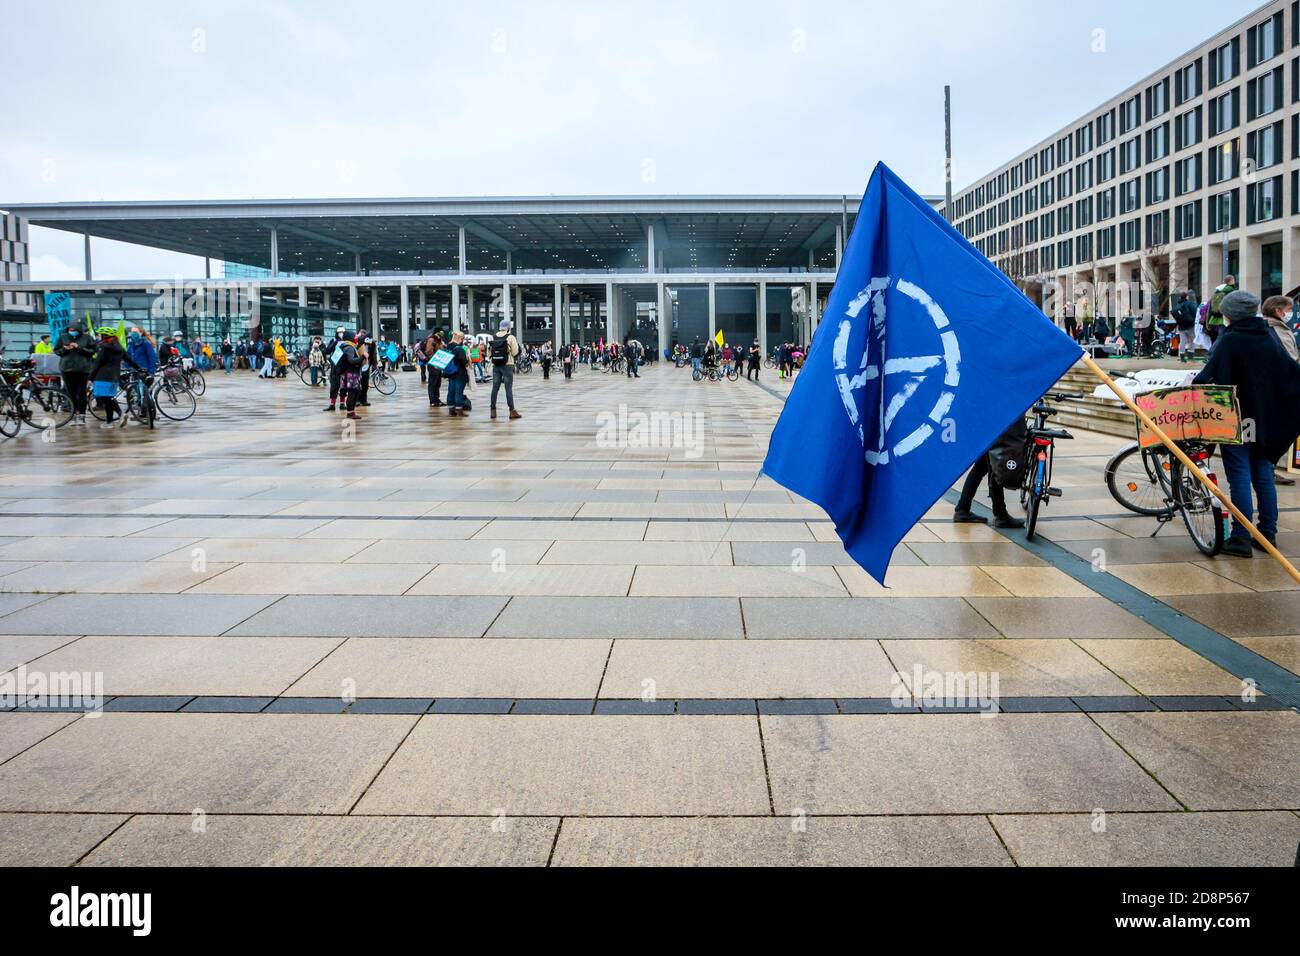 Estinzione bandiera ribellione come attivisti del clima protestano contro l'apertura del nuovo aeroporto internazionale di Berlino-Brandeburgo (BER). Foto Stock